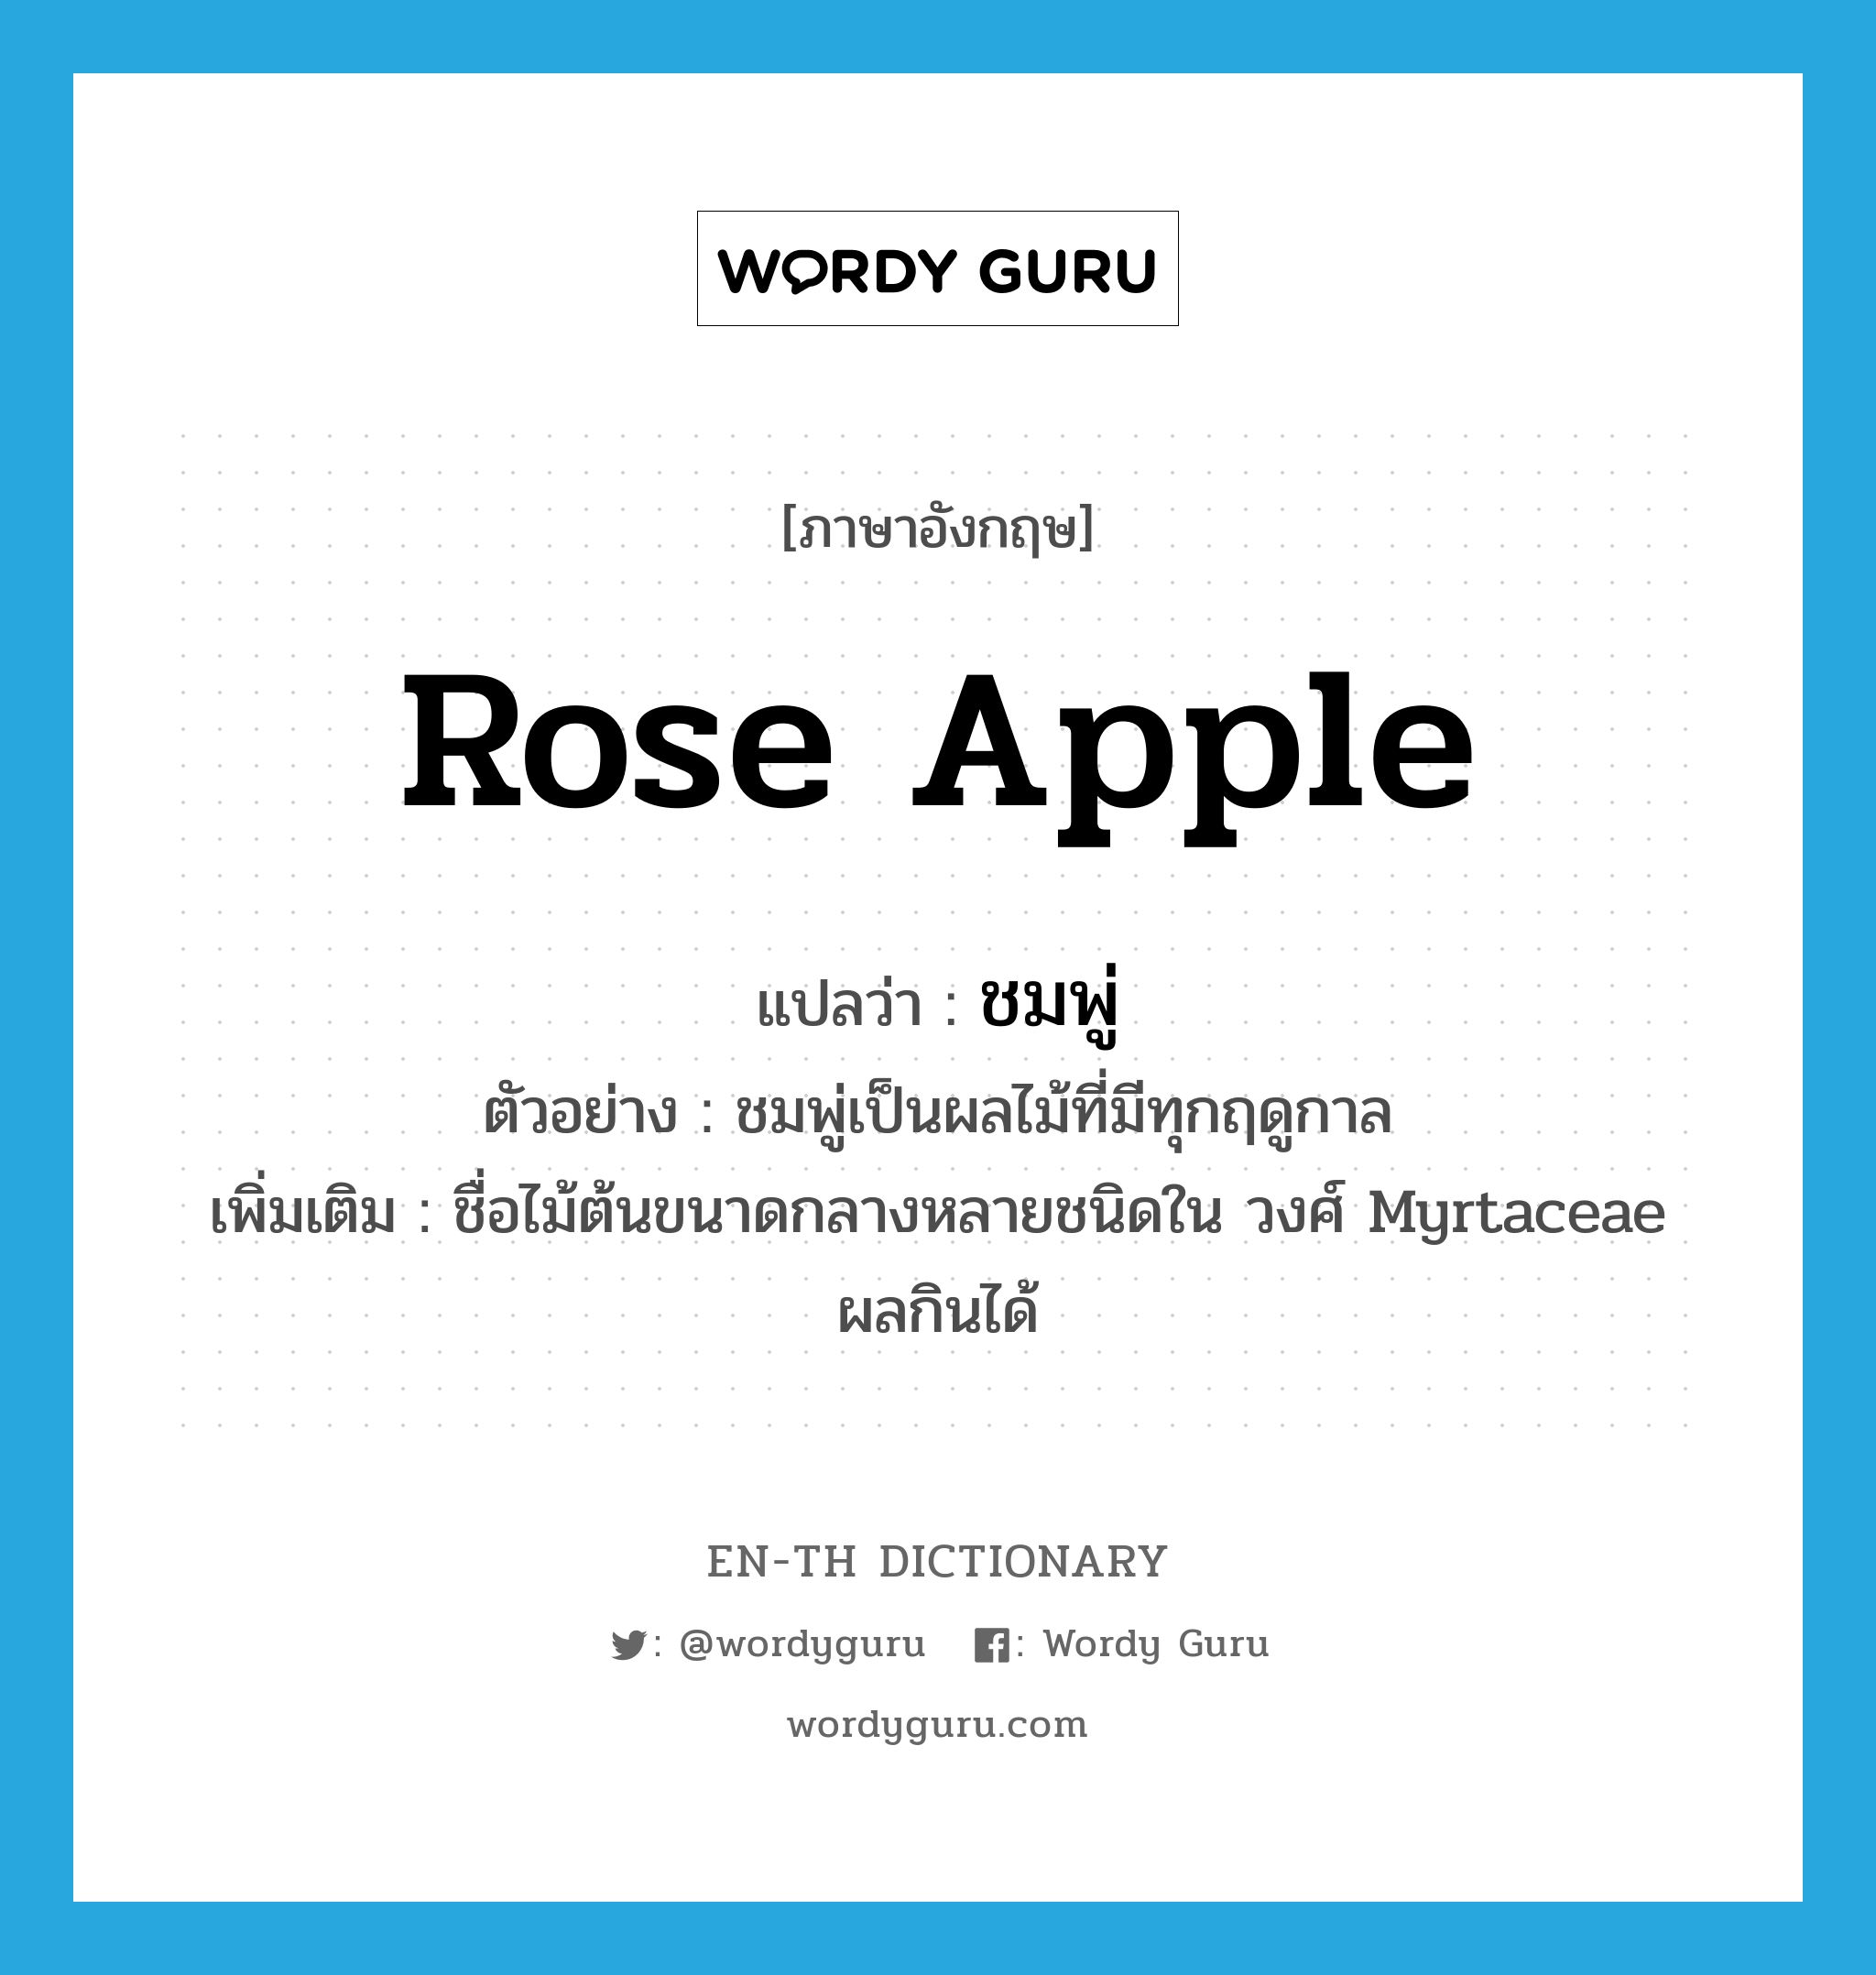 rose apple แปลว่า?, คำศัพท์ภาษาอังกฤษ rose apple แปลว่า ชมพู่ ประเภท N ตัวอย่าง ชมพู่เป็นผลไม้ที่มีทุกฤดูกาล เพิ่มเติม ชื่อไม้ต้นขนาดกลางหลายชนิดใน วงศ์ Myrtaceae ผลกินได้ หมวด N